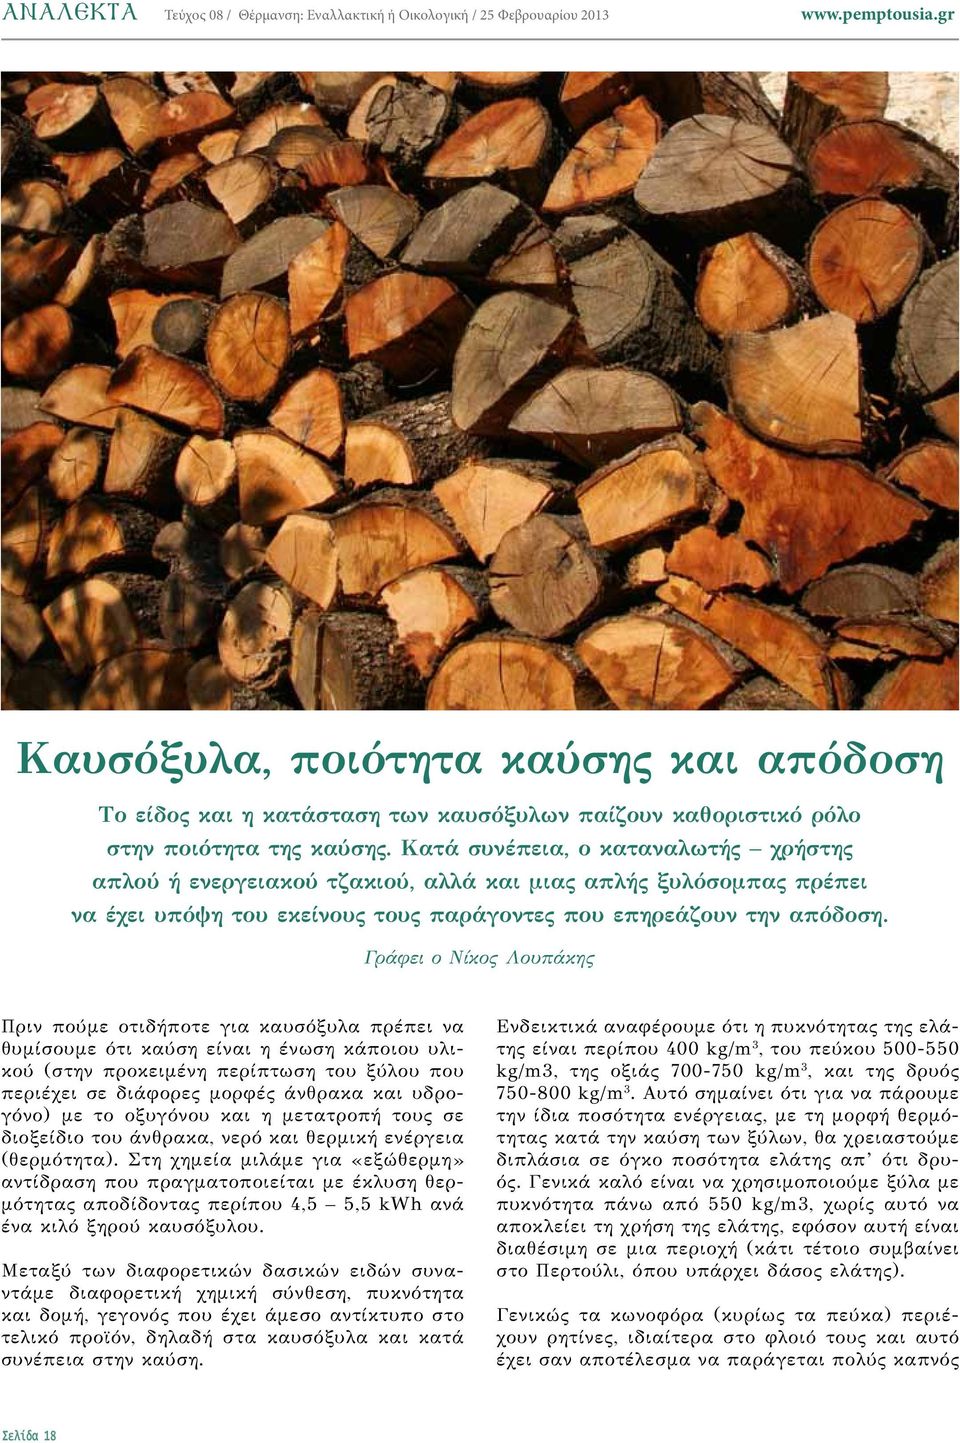 Γράφει ο Νίκος Λουπάκης Πριν πούμε οτιδήποτε για καυσόξυλα πρέπει να θυμίσουμε ότι καύση είναι η ένωση κάποιου υλικού (στην προκειμένη περίπτωση του ξύλου που περιέχει σε διάφορες μορφές άνθρακα και